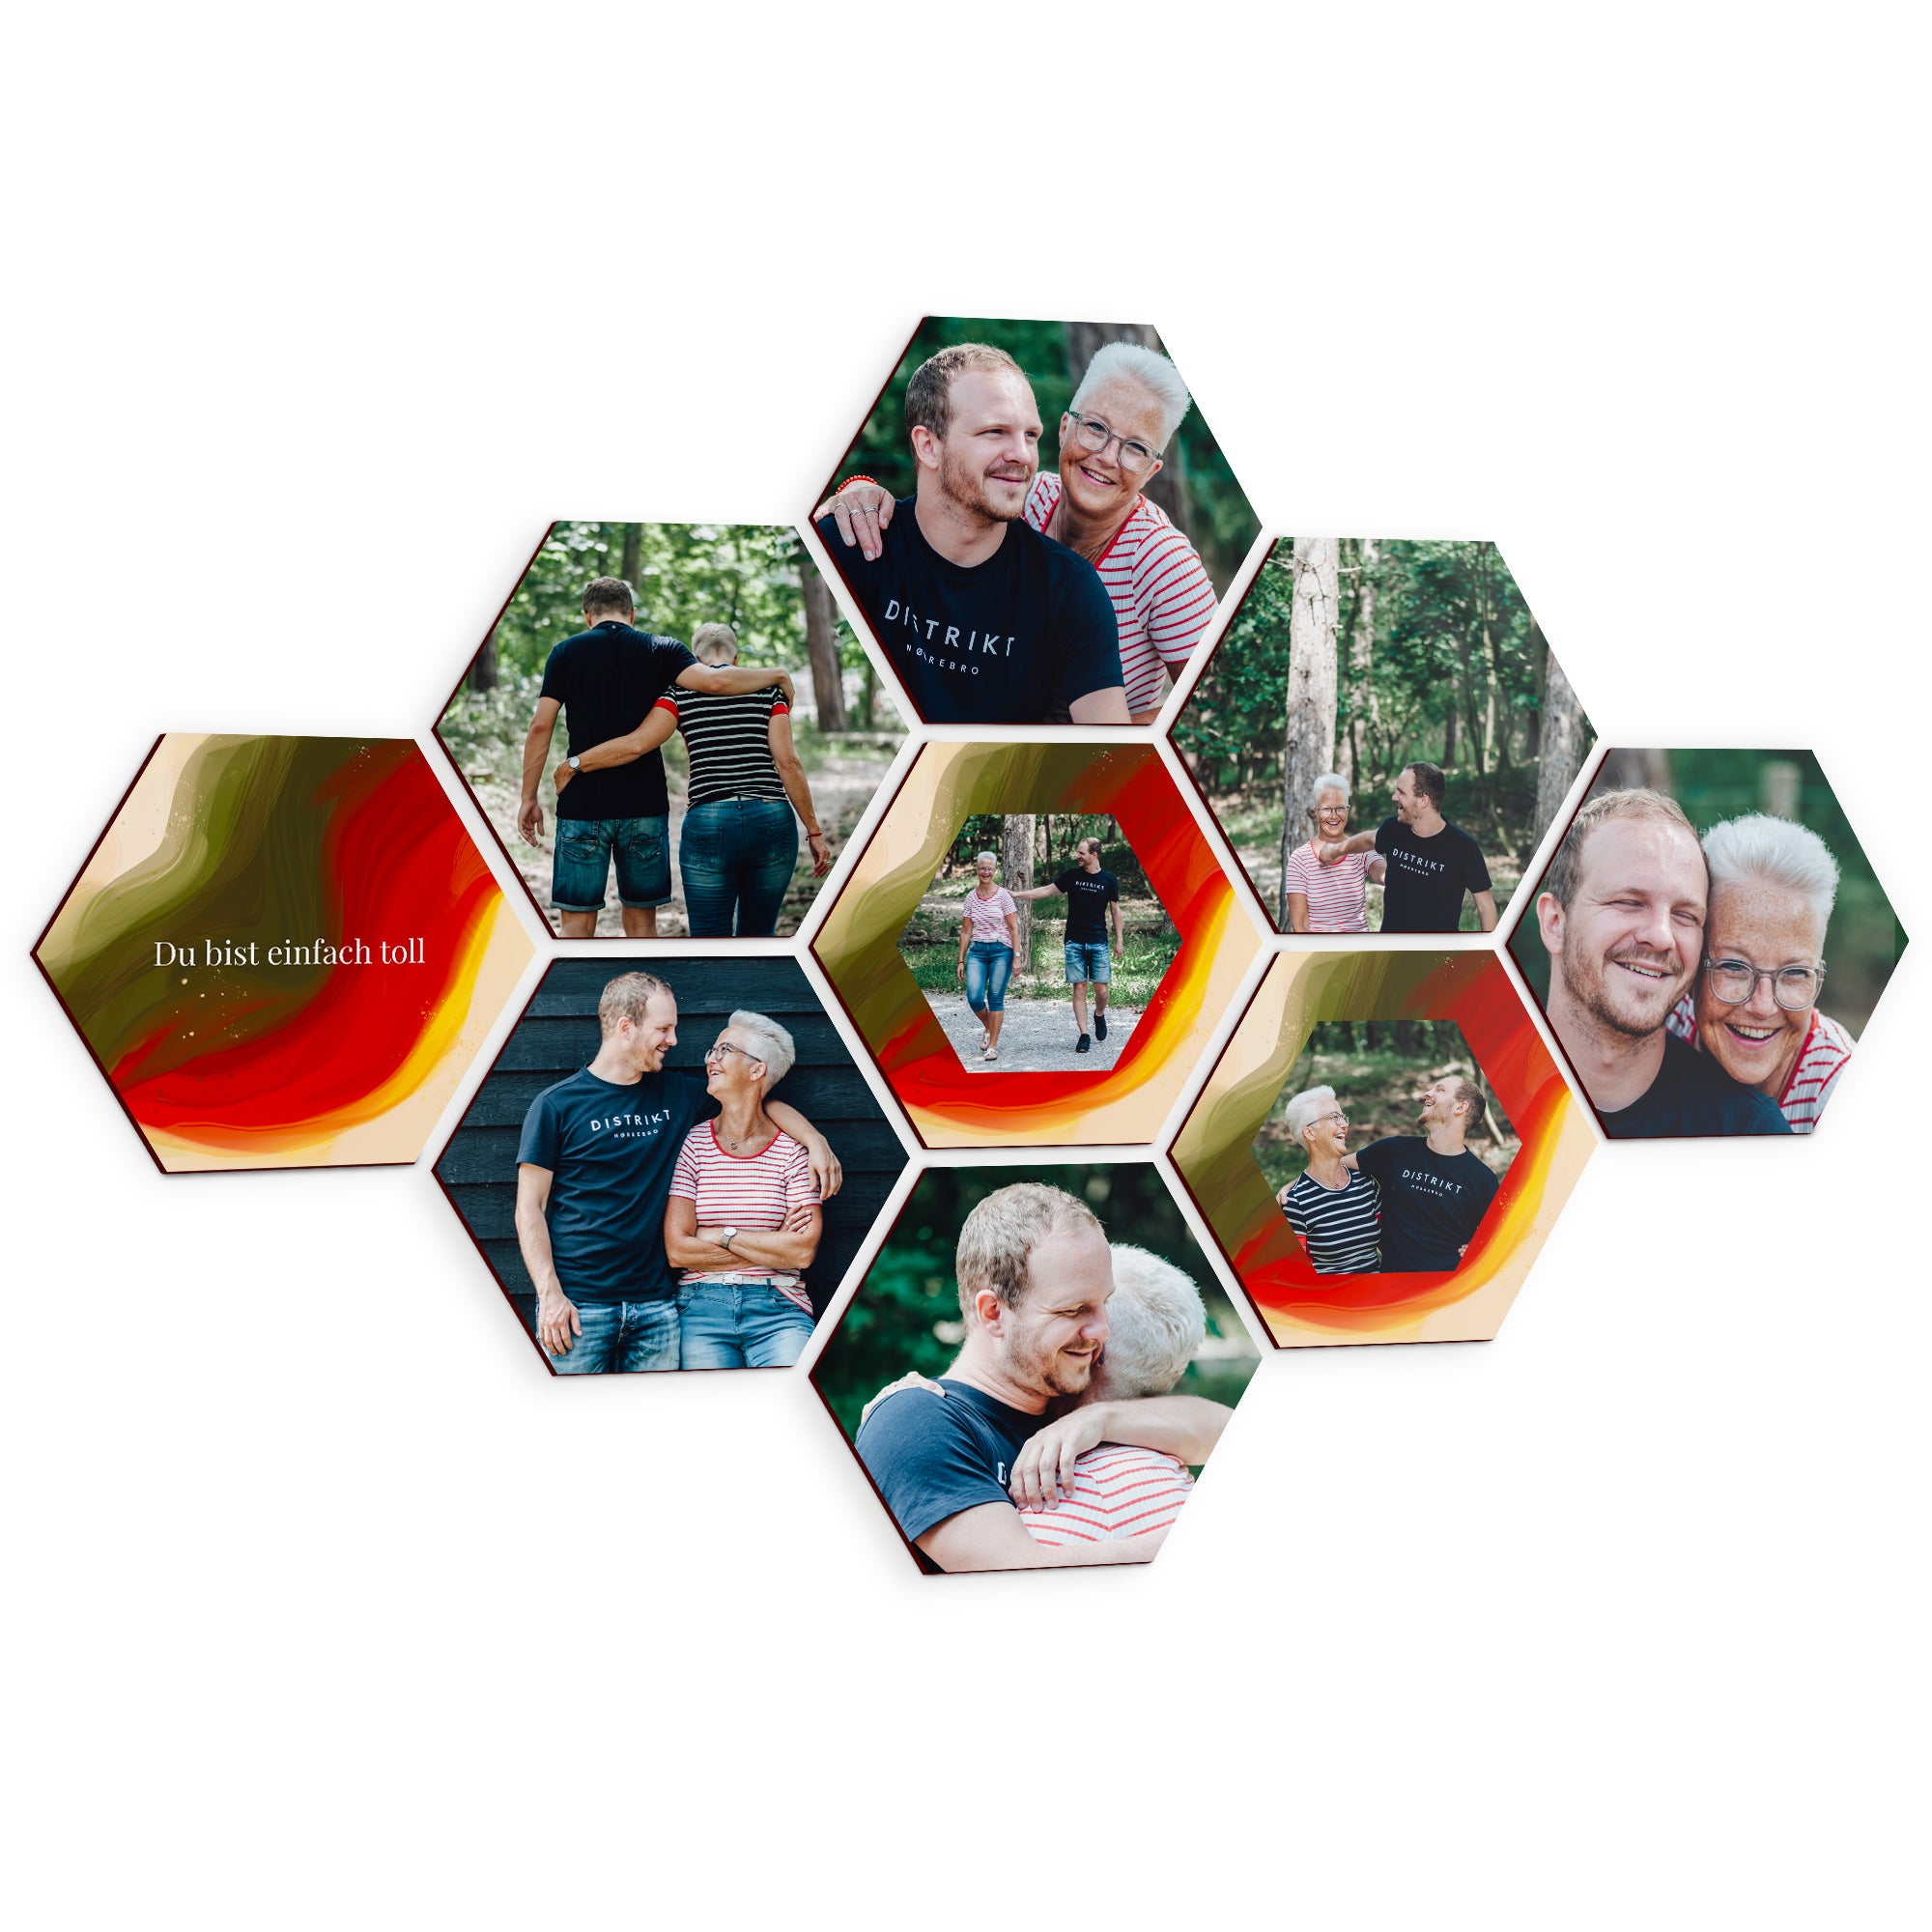 Fotokachel Hexagon 9 Stück  - Onlineshop YourSurprise